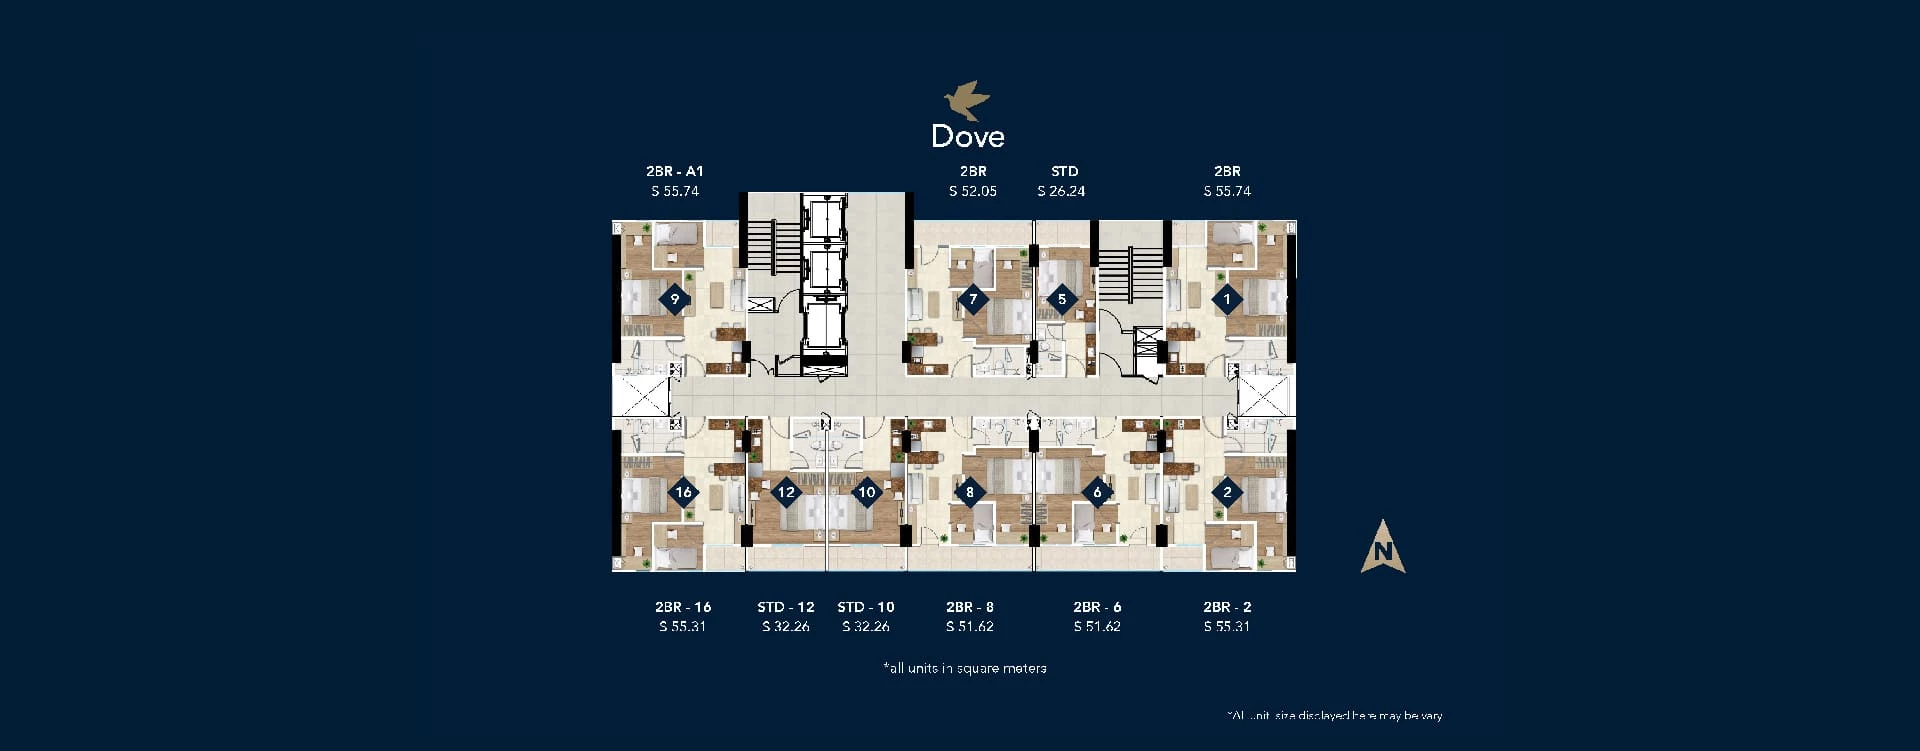 Site-Plan-Tower-Dove-Daan-Mogot-City